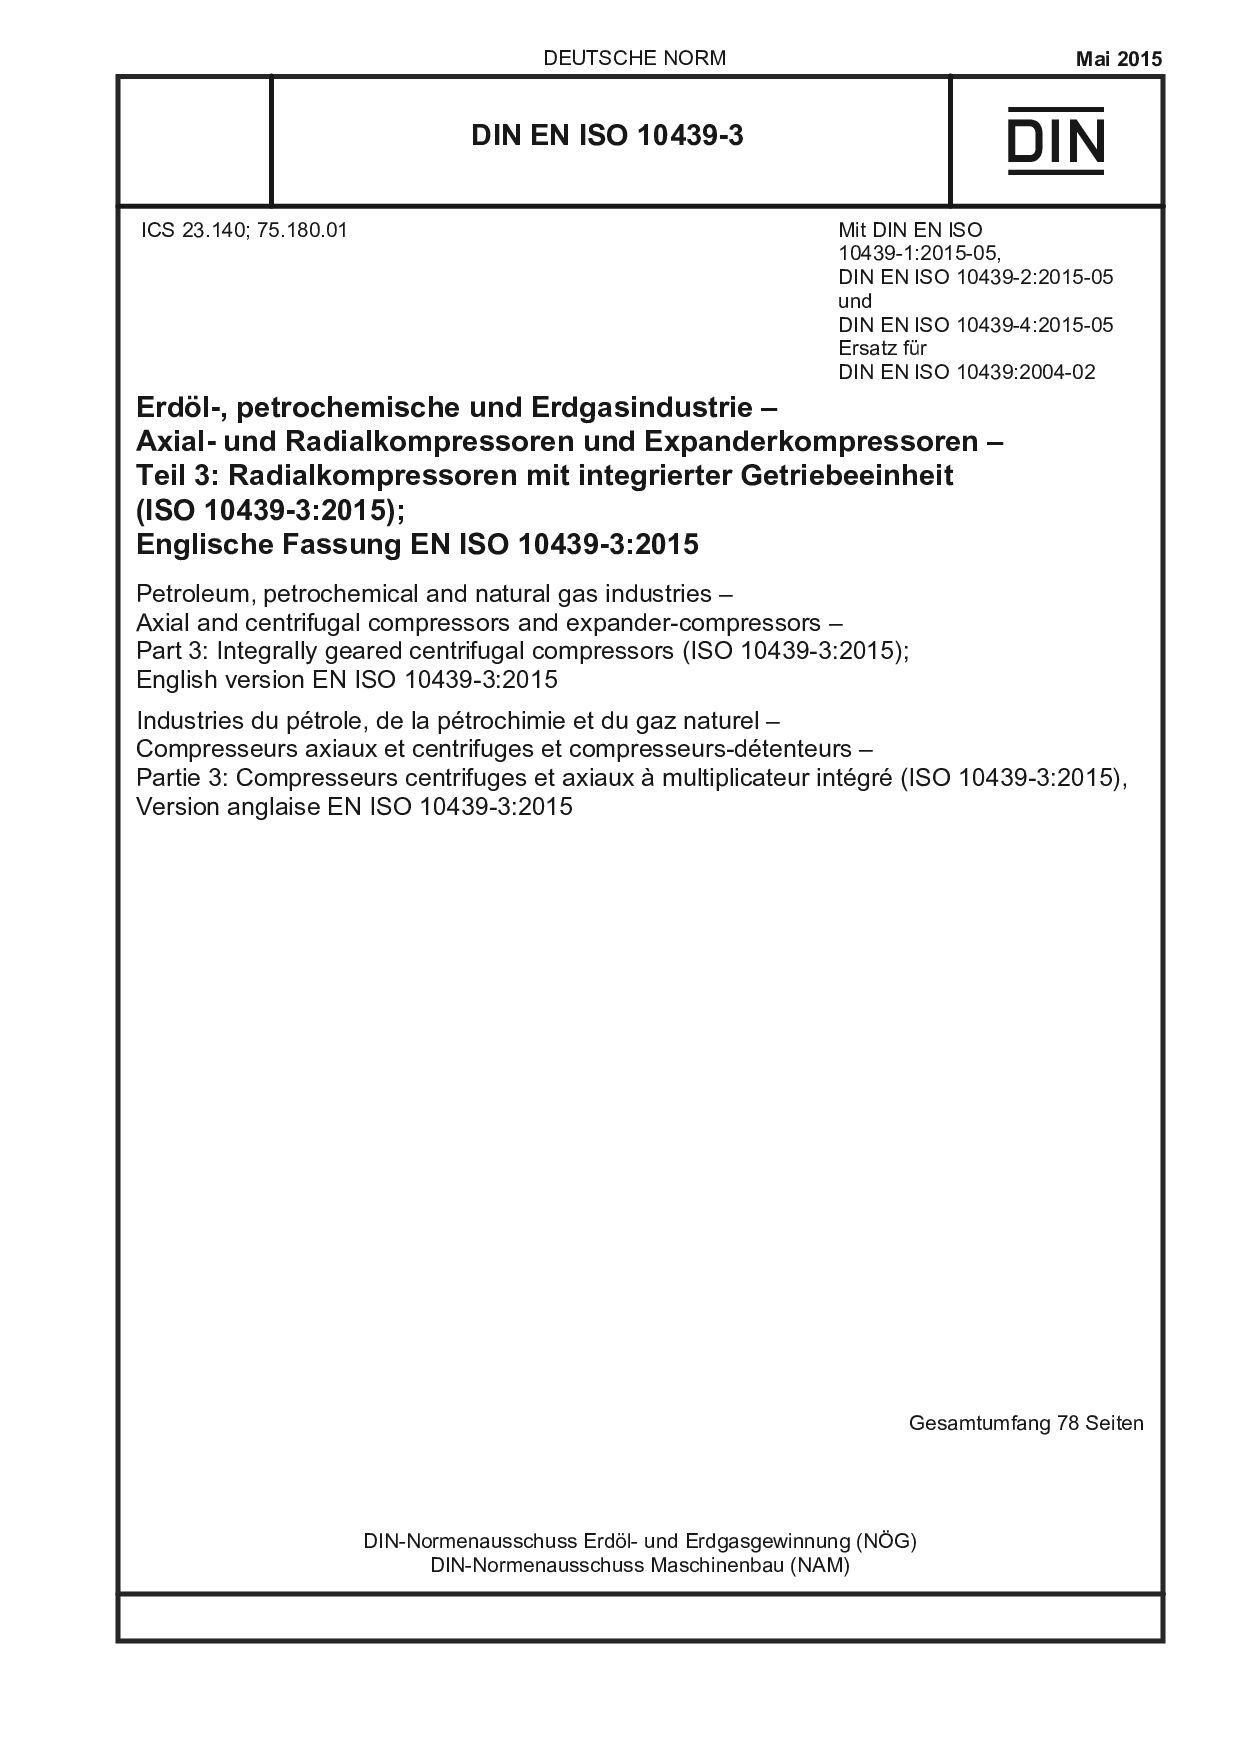 DIN EN ISO 10439-3:2015封面图